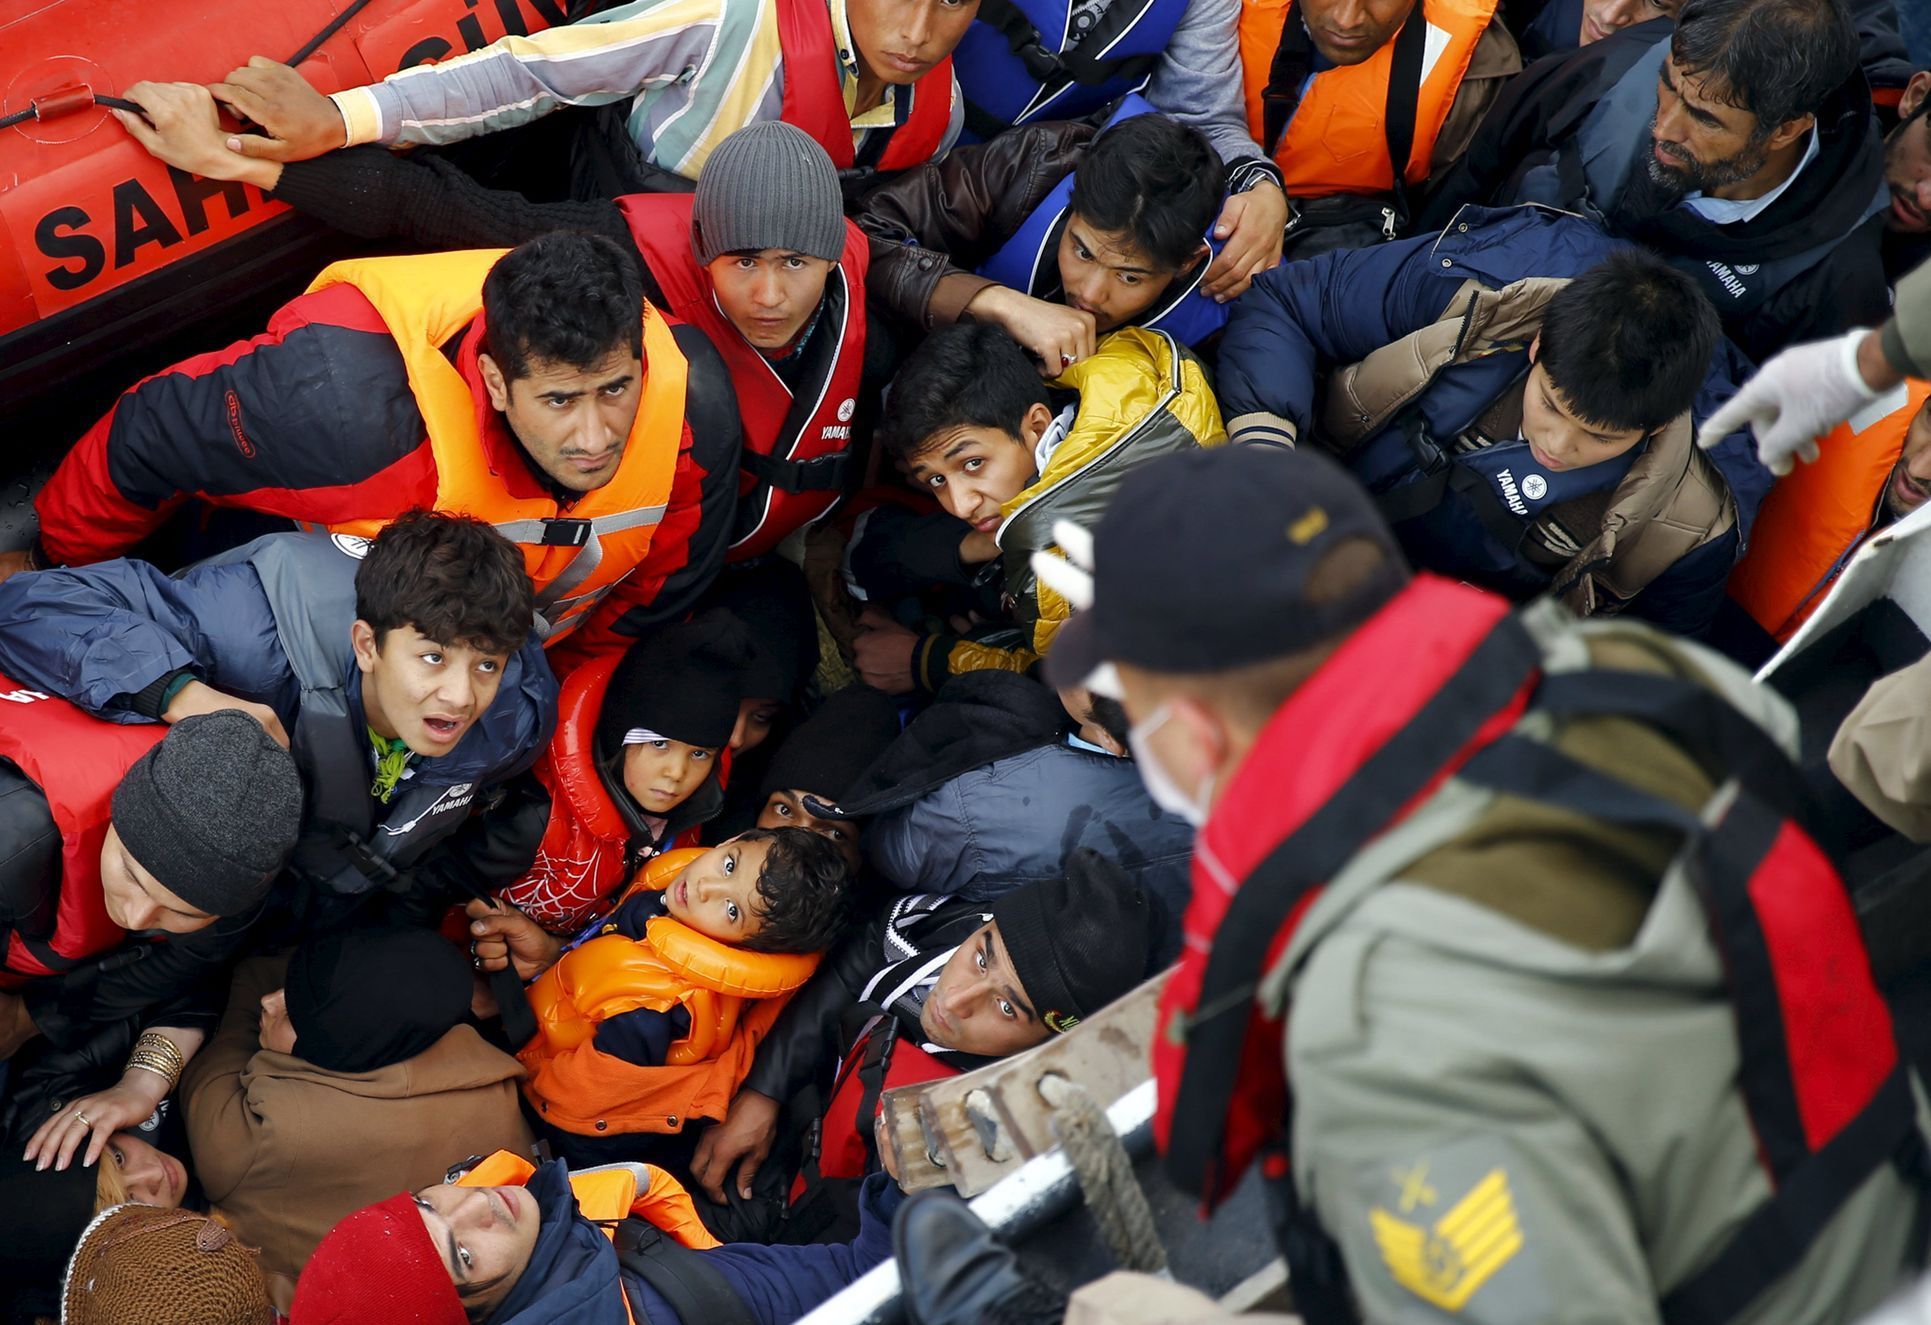 Těmto uprchlíkům se na Lesbos dostat nepodařilo, zachraňovala je turecká pobřežní stráž.